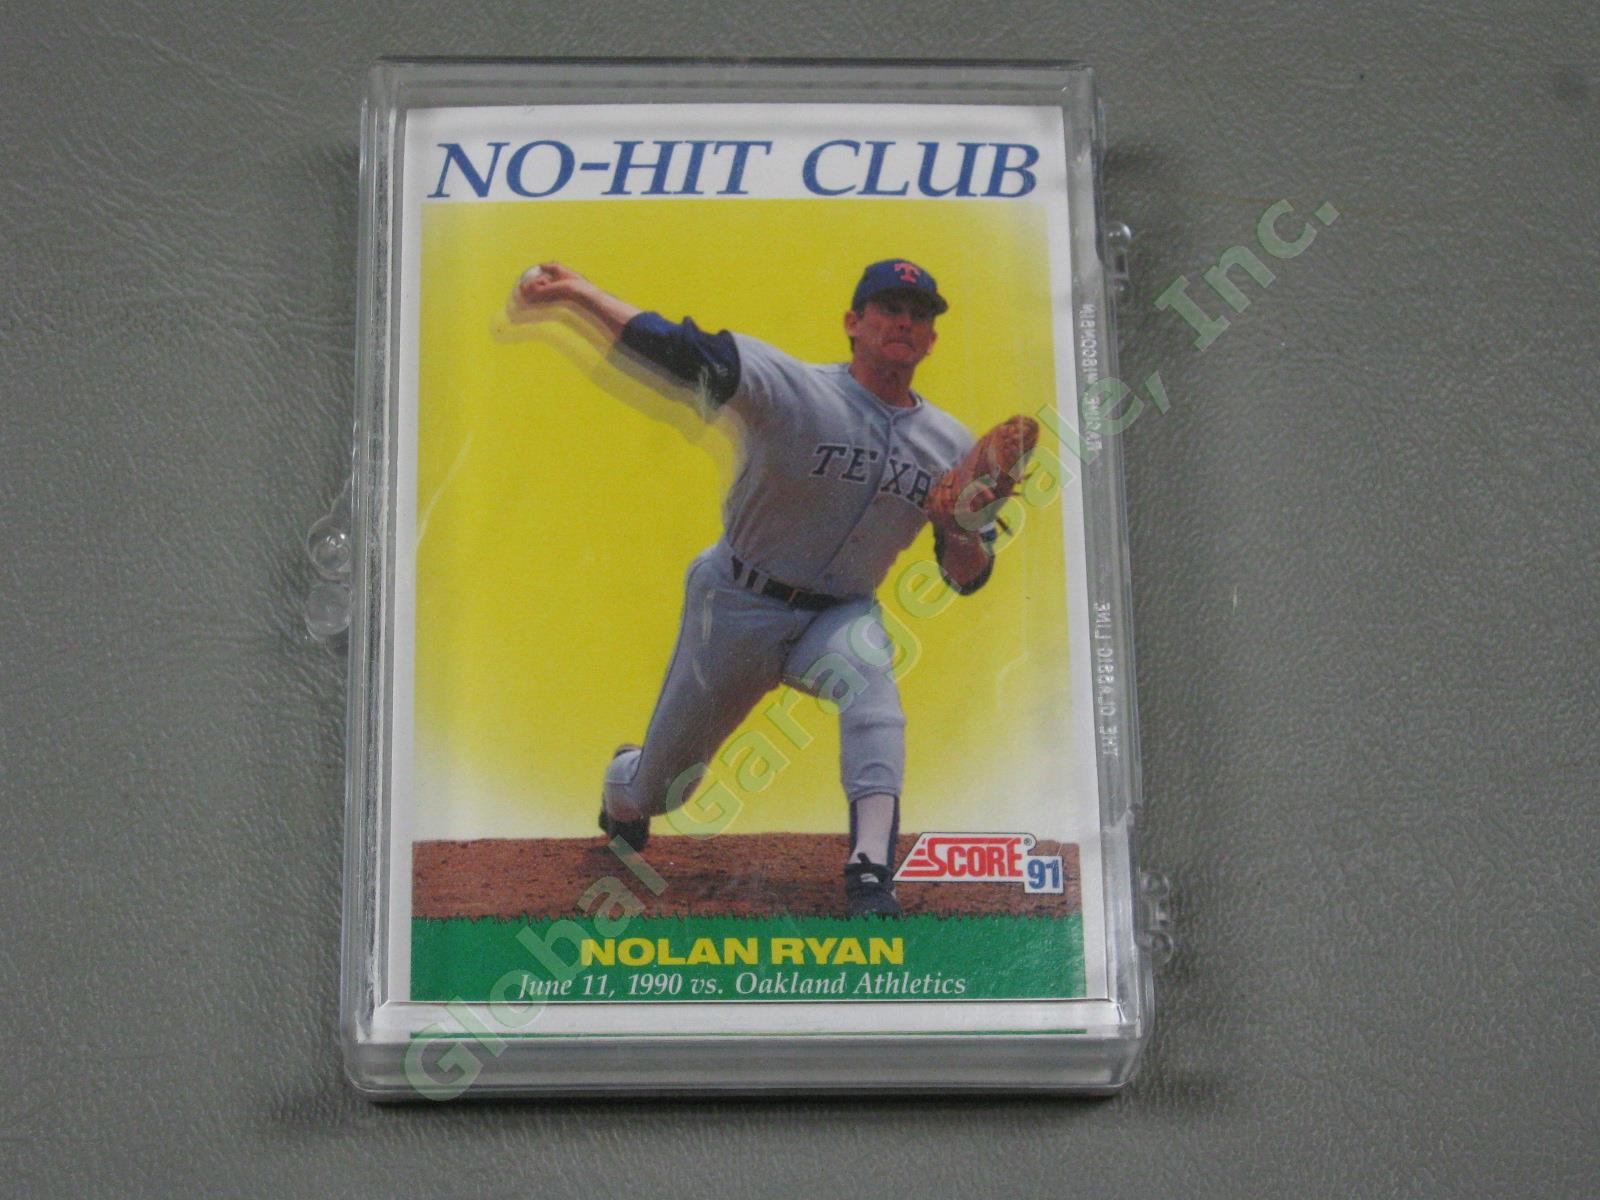 HUGE 3650+/- Vtg Nolan Ryan Baseball Card Lot 1984-1991 Topps Upper Deck #1 ++NR 14